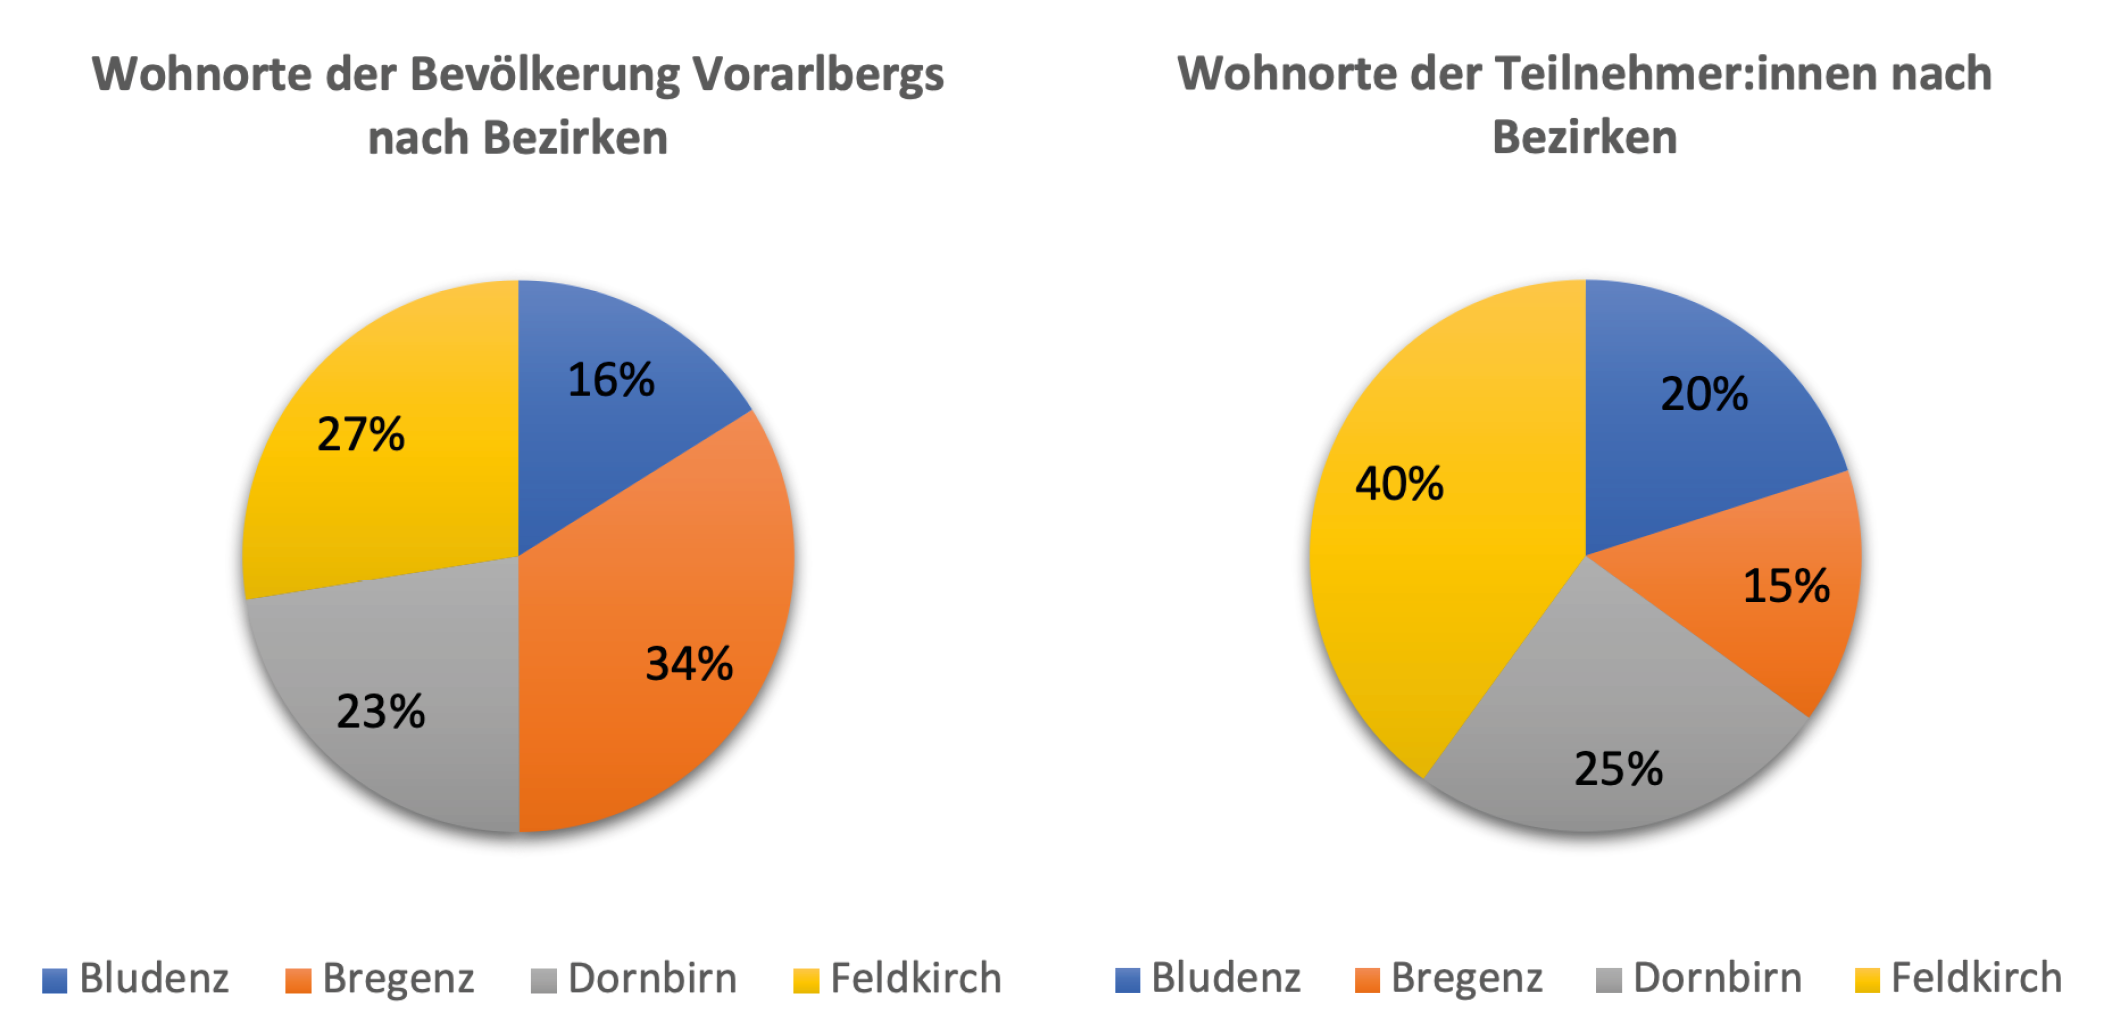 In Bezug auf die Wohnorte in Vorarlberg zeigt sich, dass die Beteiligung in der Gesamtbevölkerung und bei den Teilnehmer:innen der Studie unterschiedlich ist. In der Gesamtbevölkerung leben die meisten Menschen in Bregenz (34%), gefolgt von Feldkirch (27%), Dornbirn (23%) und Bludenz (16%). Bei den Studienteilnehmer:innen hingegen ist Feldkirch der am häufigsten genannte Wohnort (40%), gefolgt von Dornbirn (25%), Bludenz (20%) und Bregenz (15%).